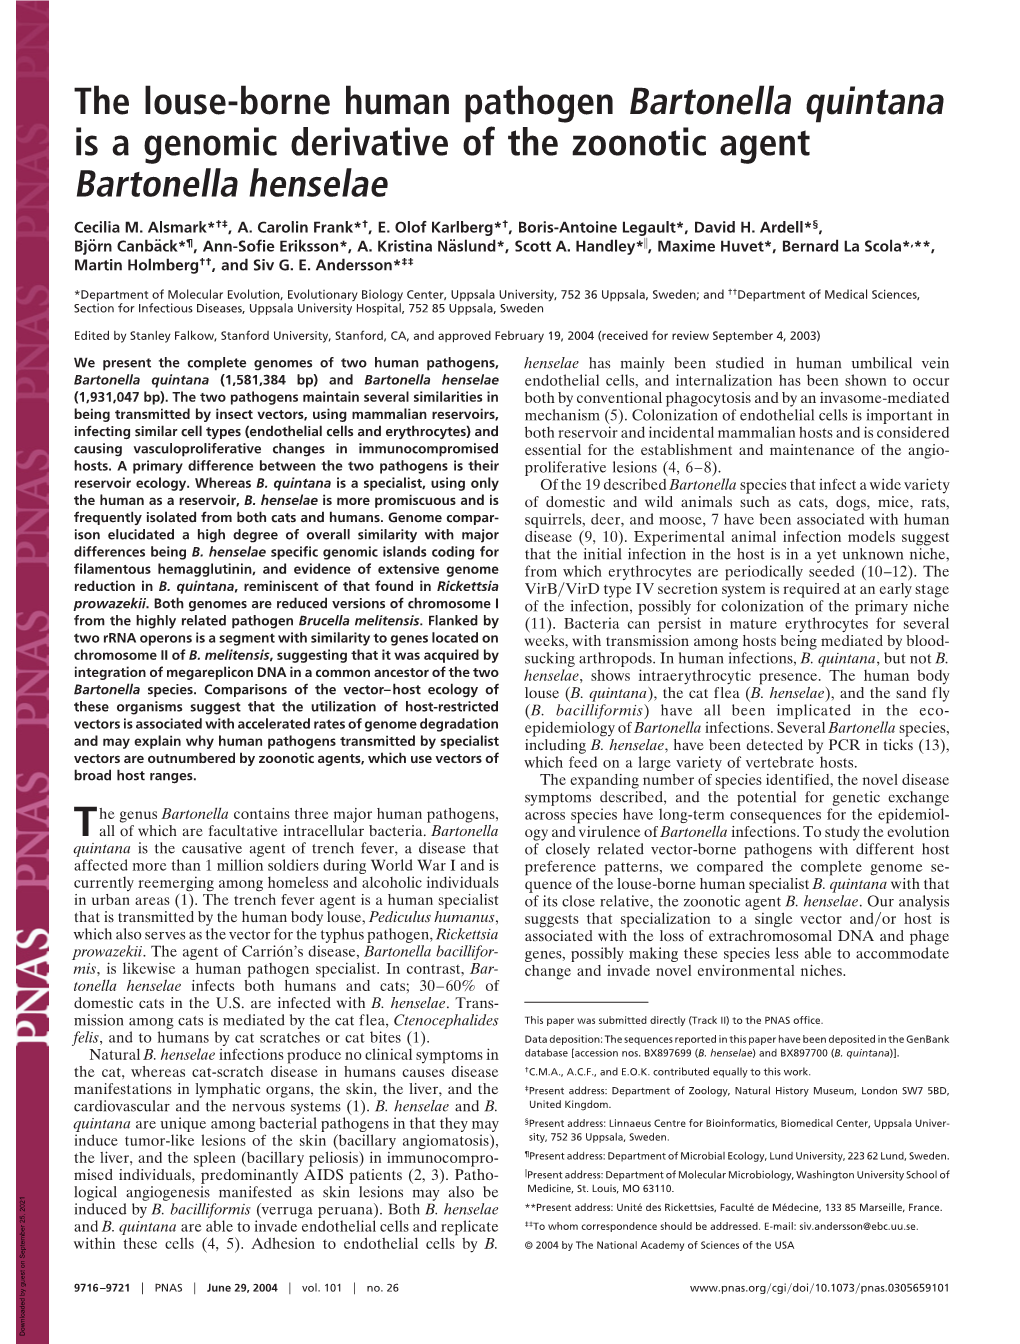 The Louse-Borne Human Pathogen Bartonella Quintana Is a Genomic Derivative of the Zoonotic Agent Bartonella Henselae